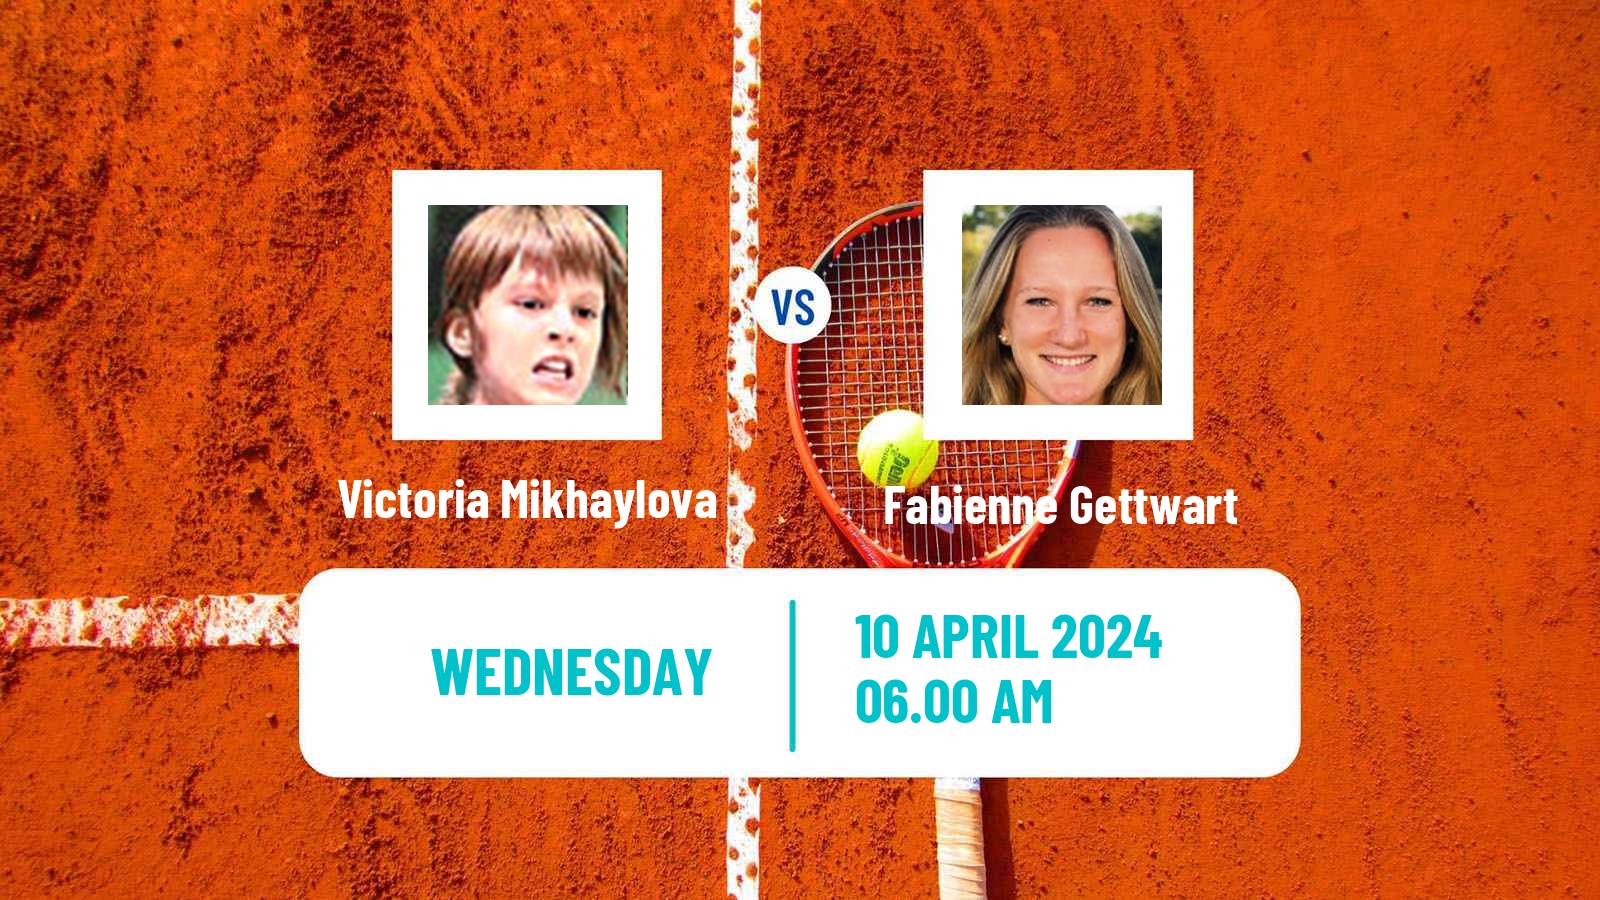 Tennis ITF W35 Sharm Elsheikh 2 Women Victoria Mikhaylova - Fabienne Gettwart